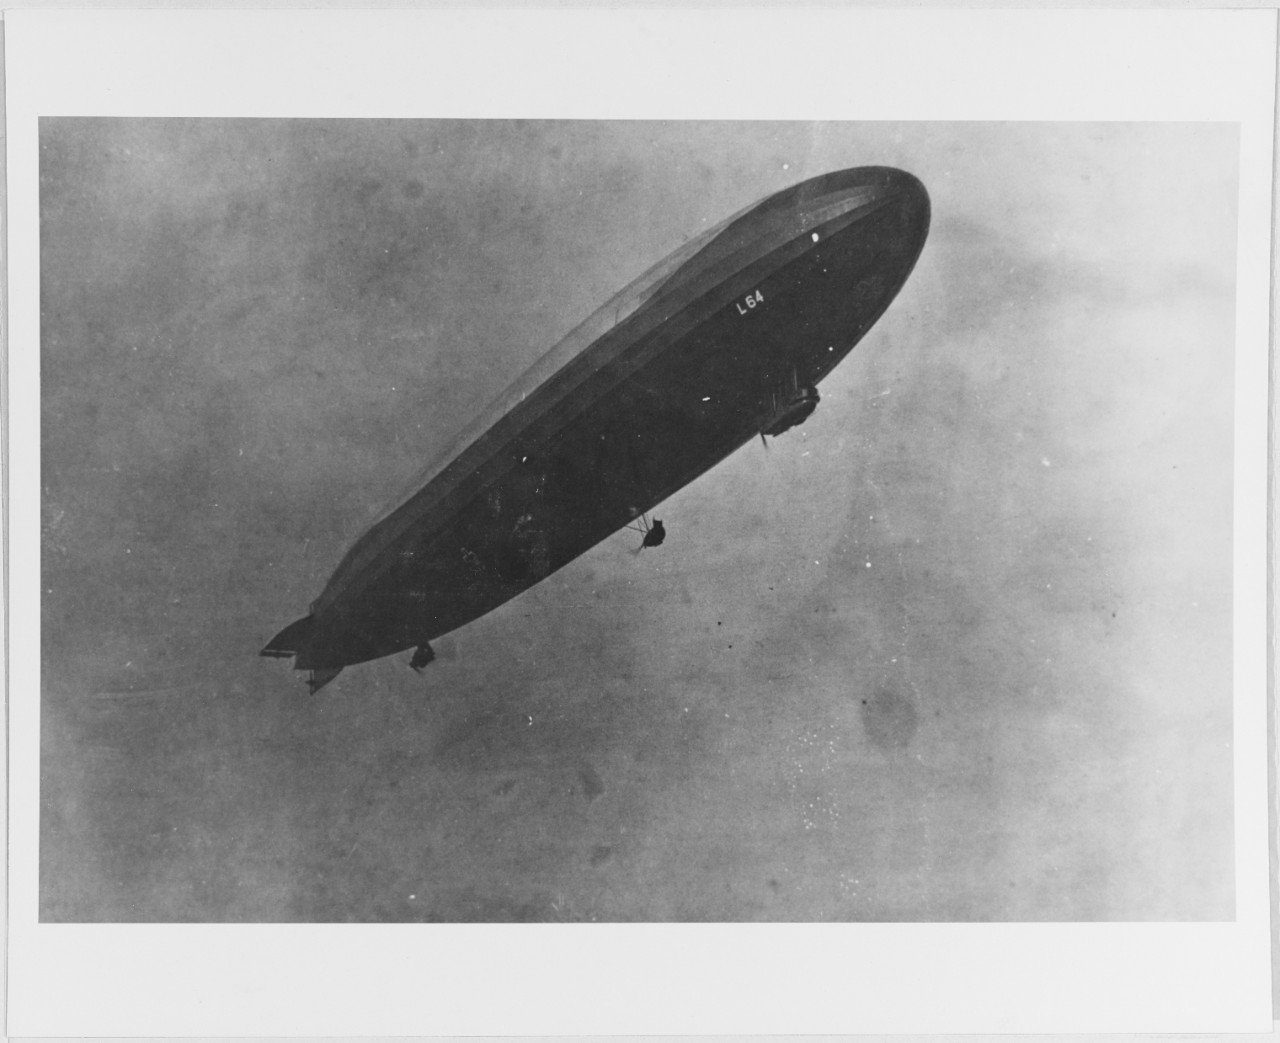 German Zeppelin L-64